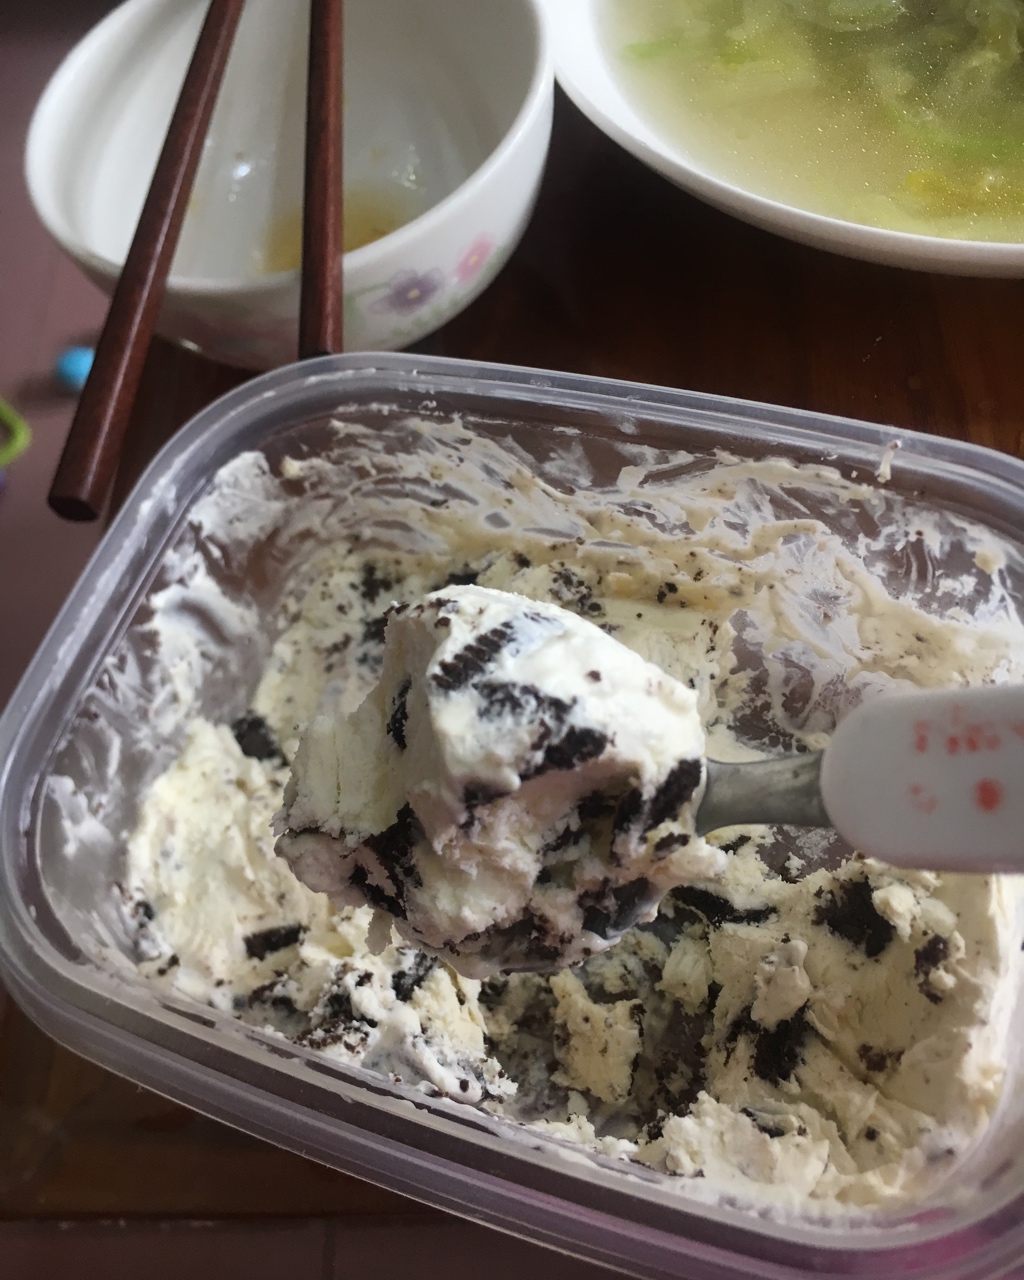 消耗淡奶油的利器 超简单超美味的冰淇淋